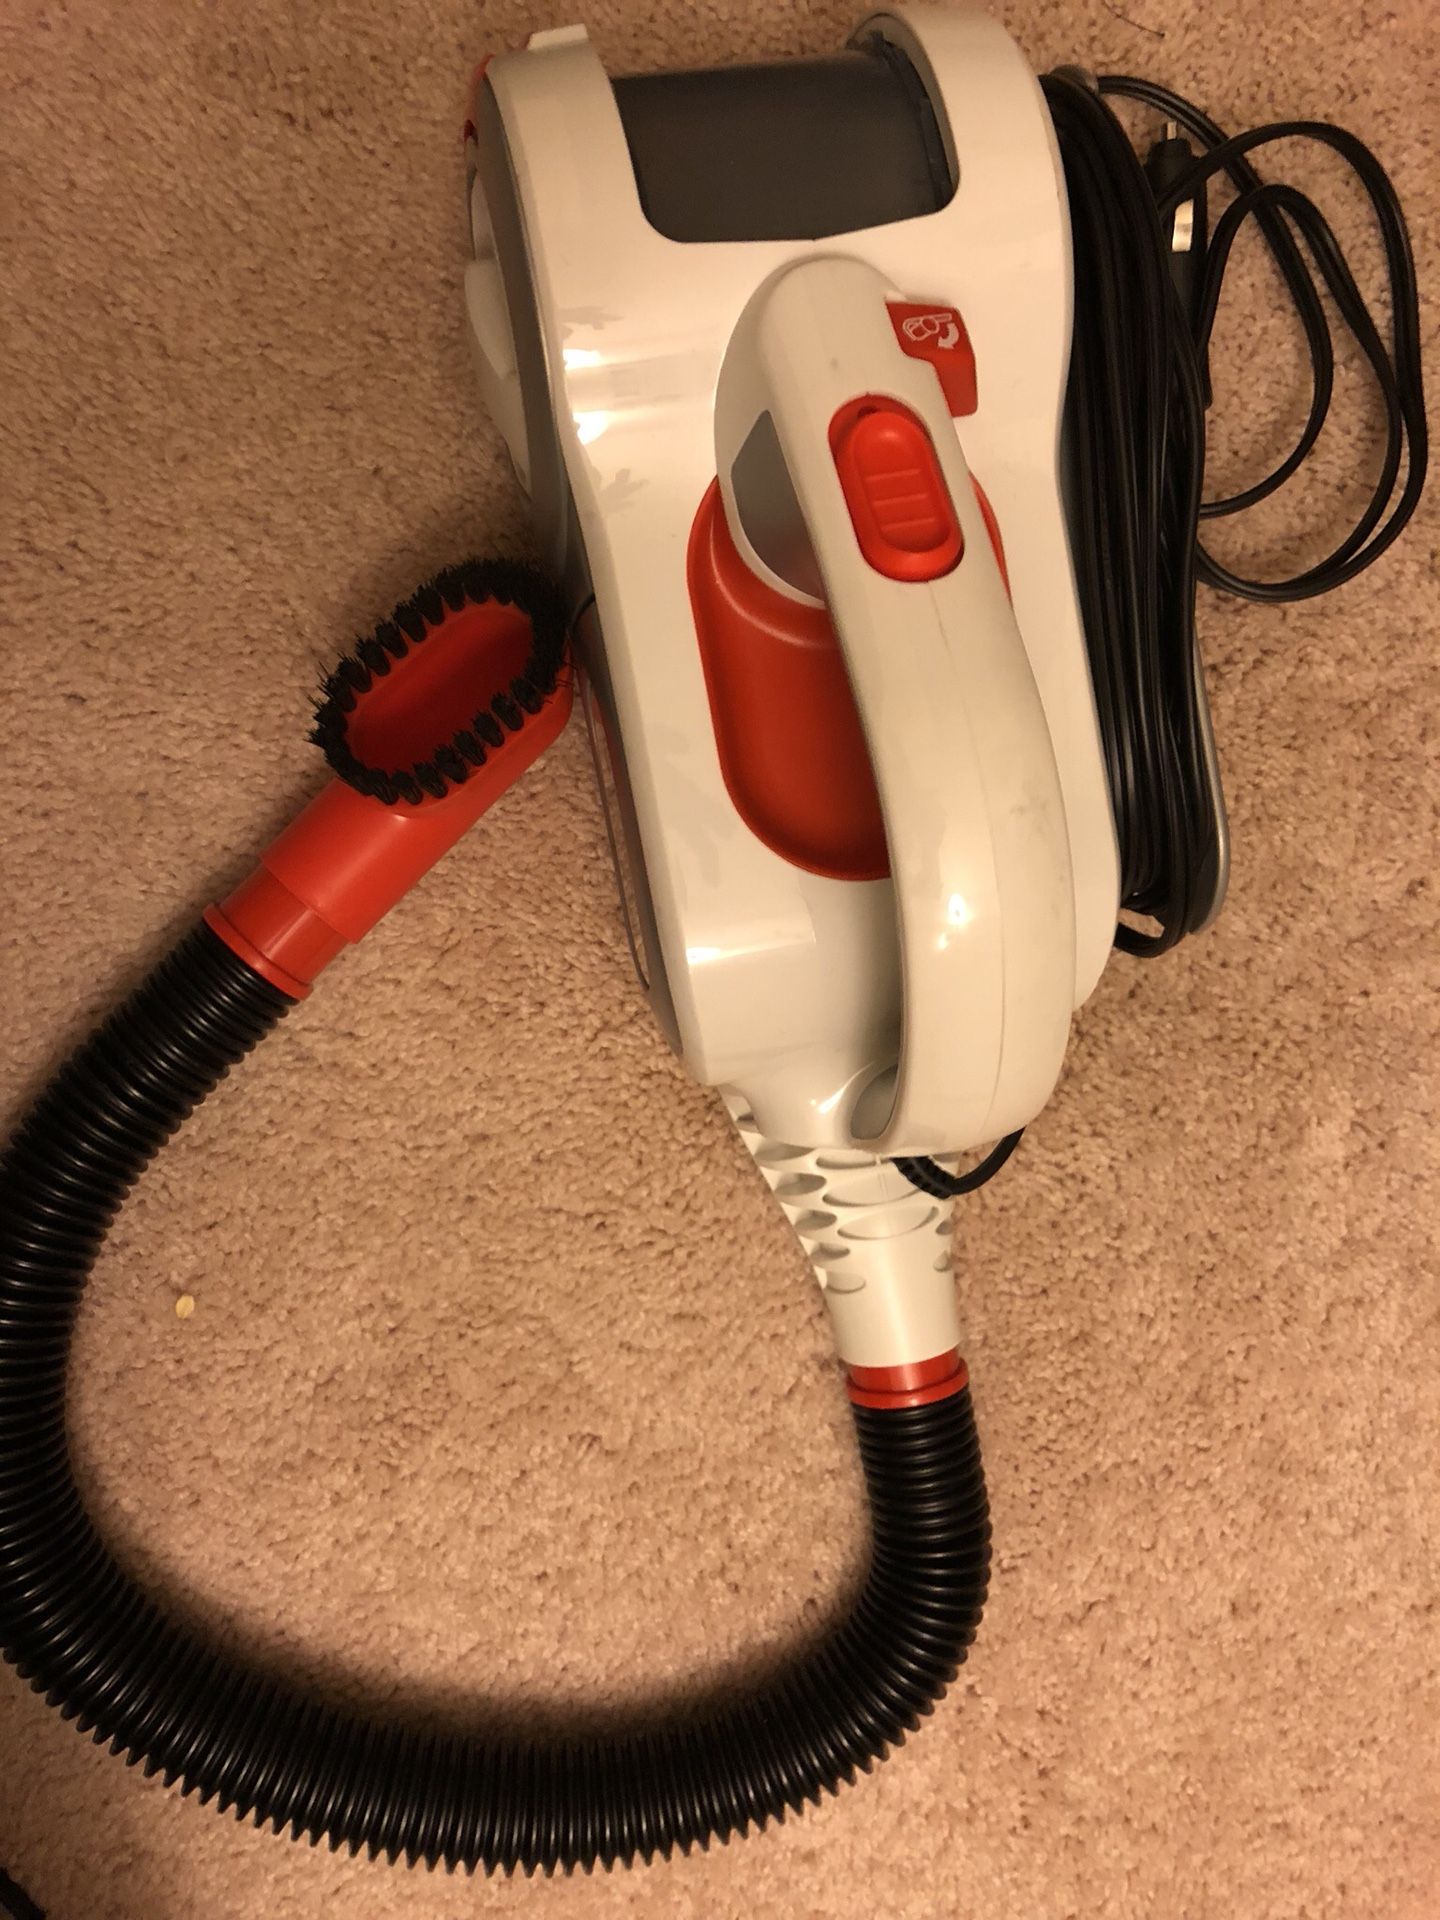 Automotive handheld vacuum cleaner